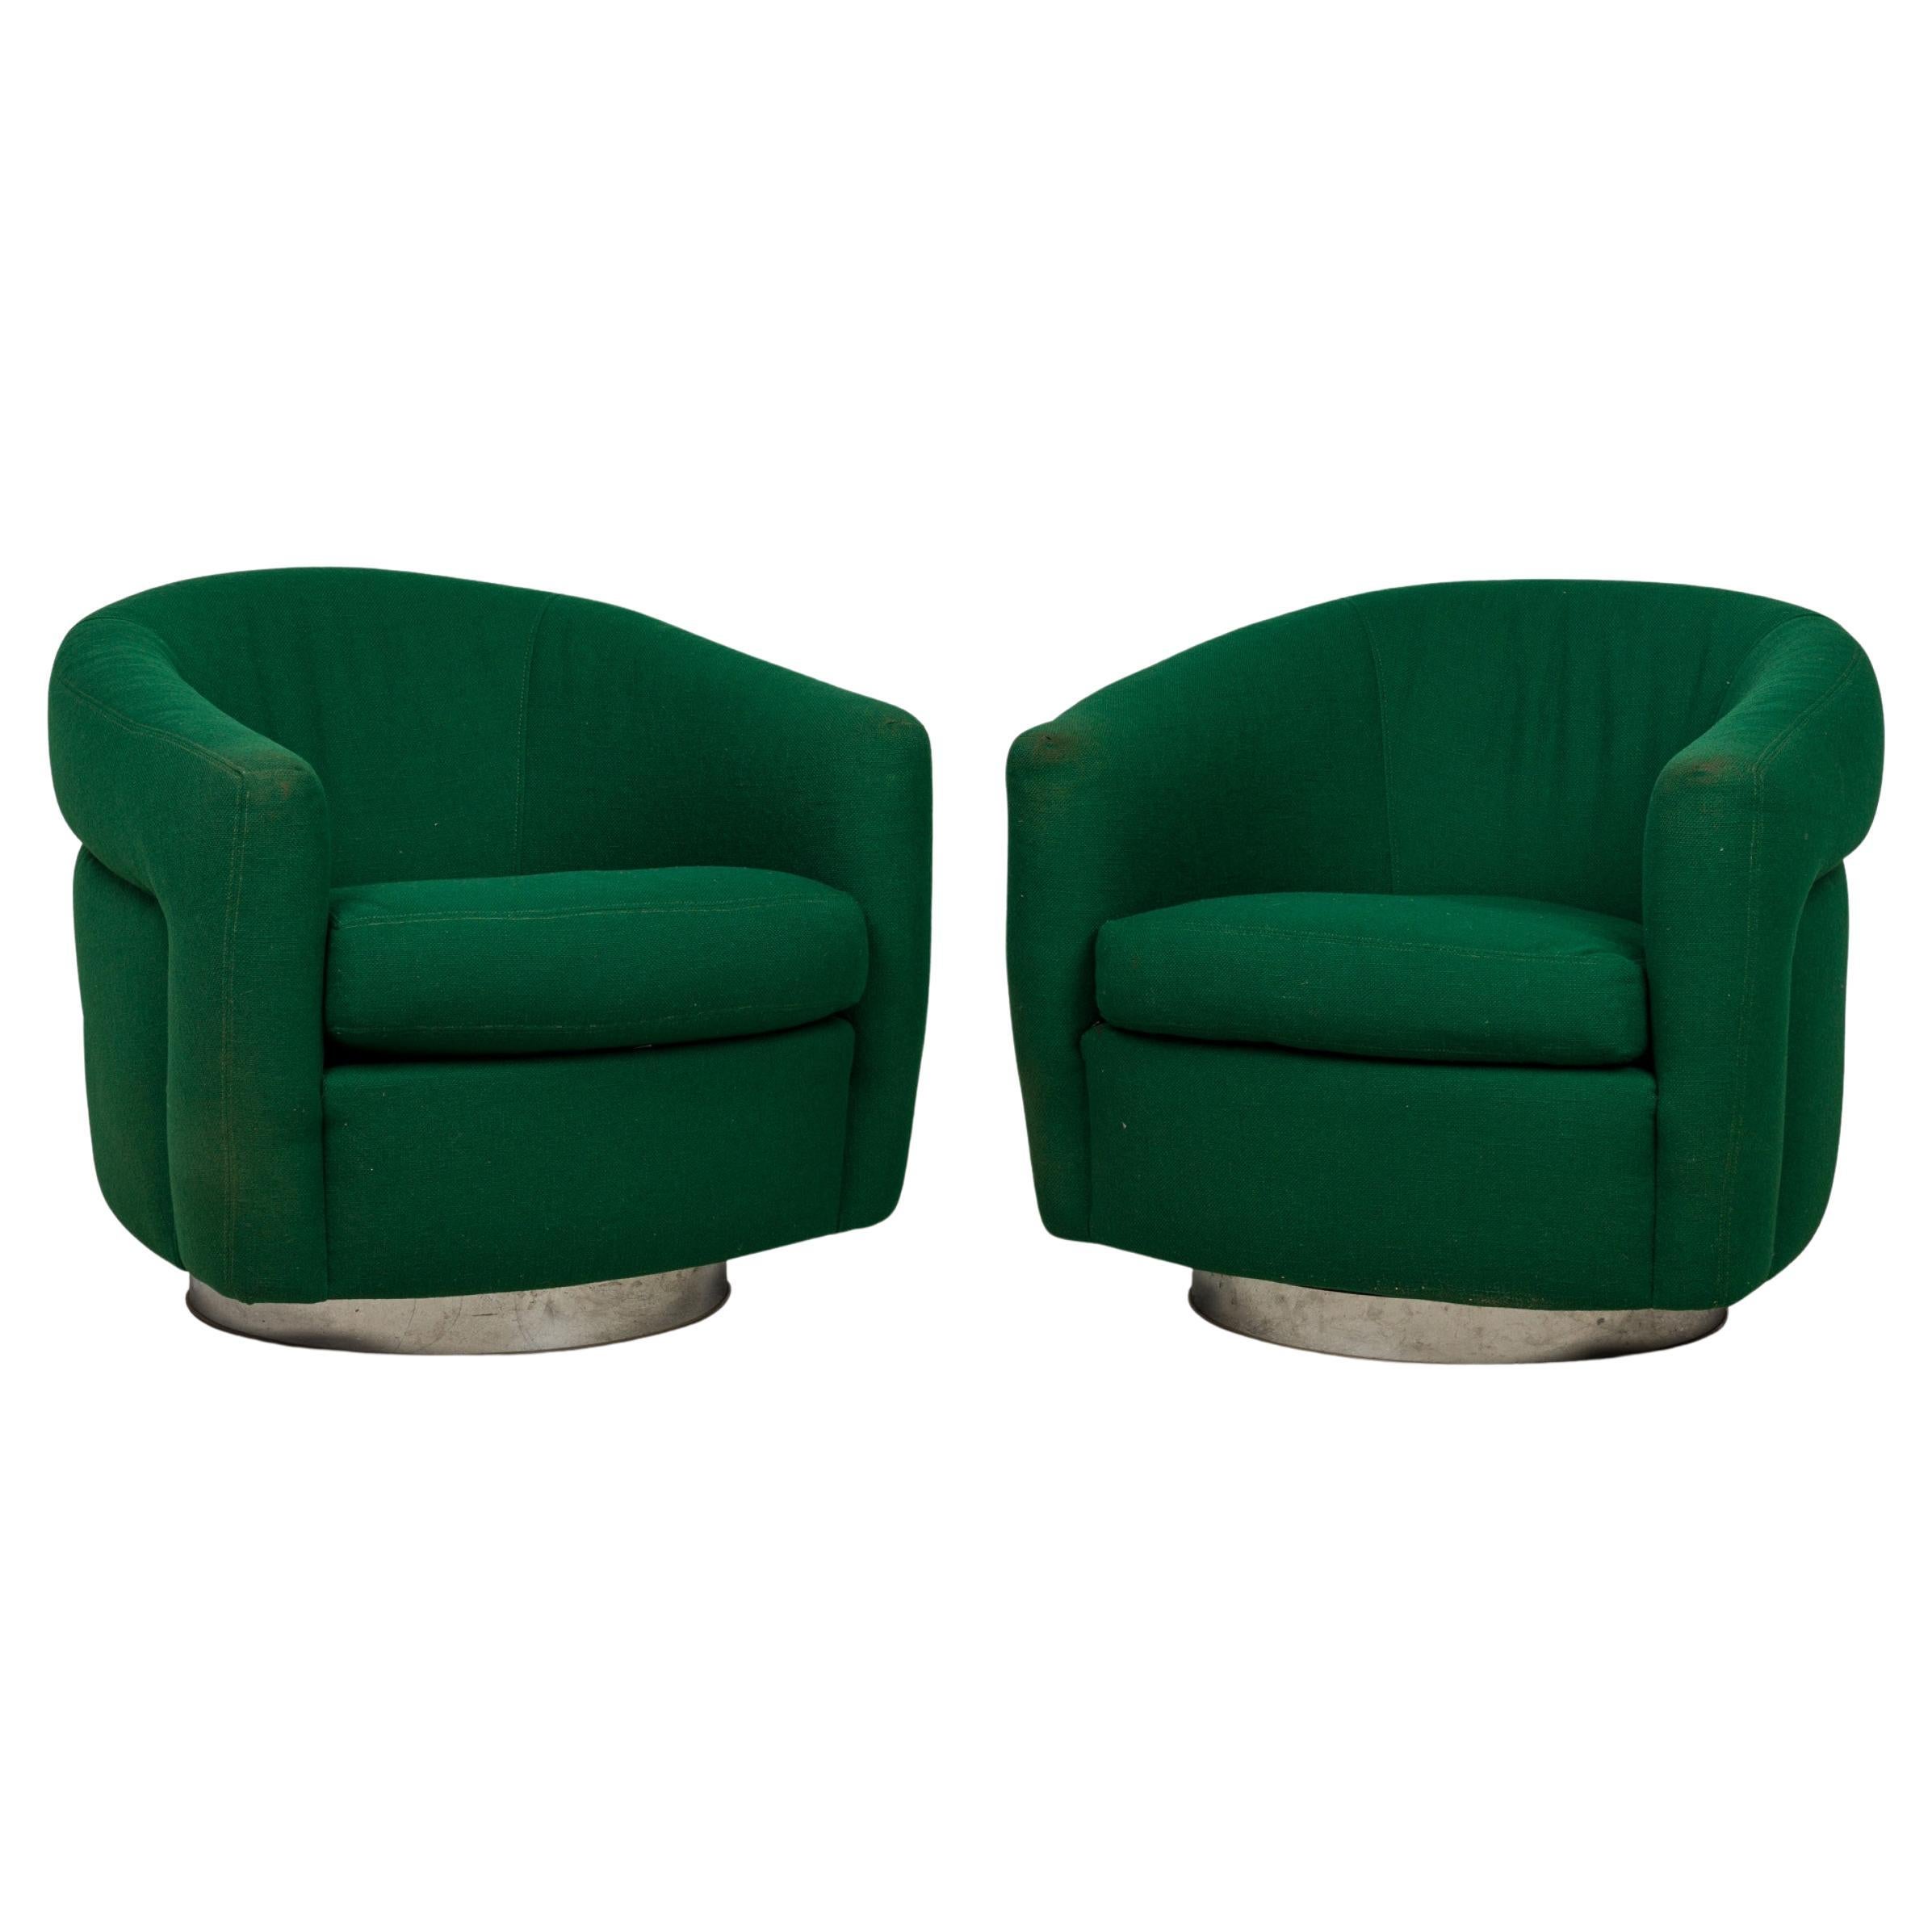 Paire de fauteuils pivotants et inclinables Milo Baughman, vert émeraude, rembourrés en vente